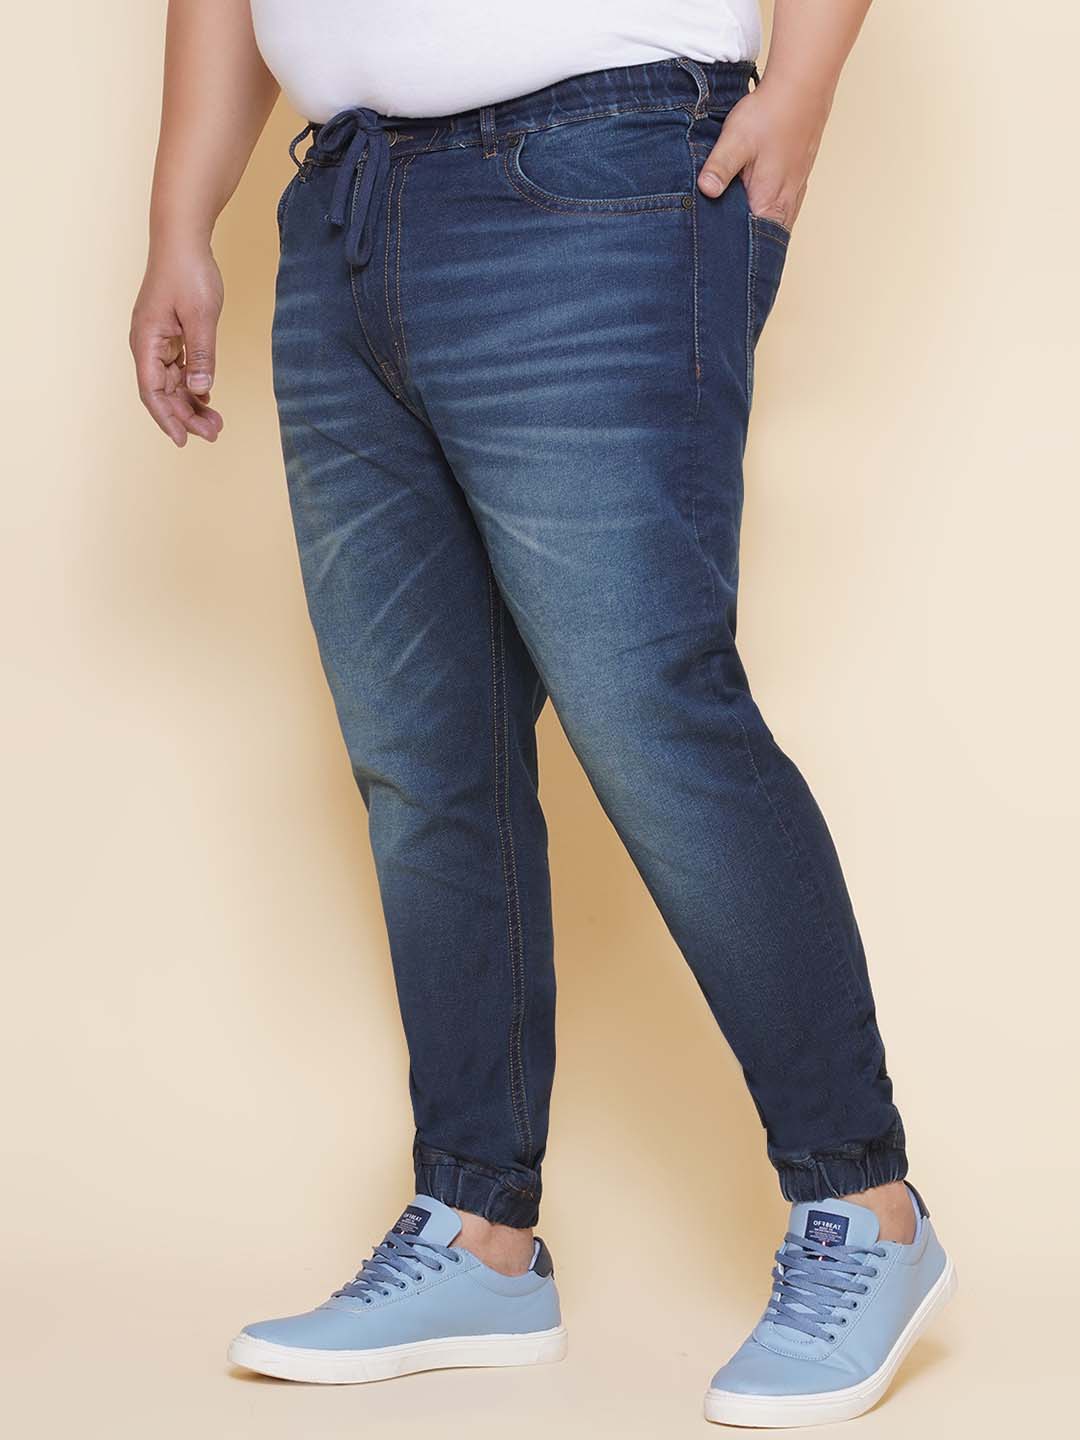 bottomwear/jeans/JPJ27102/jpj27102-4.jpg